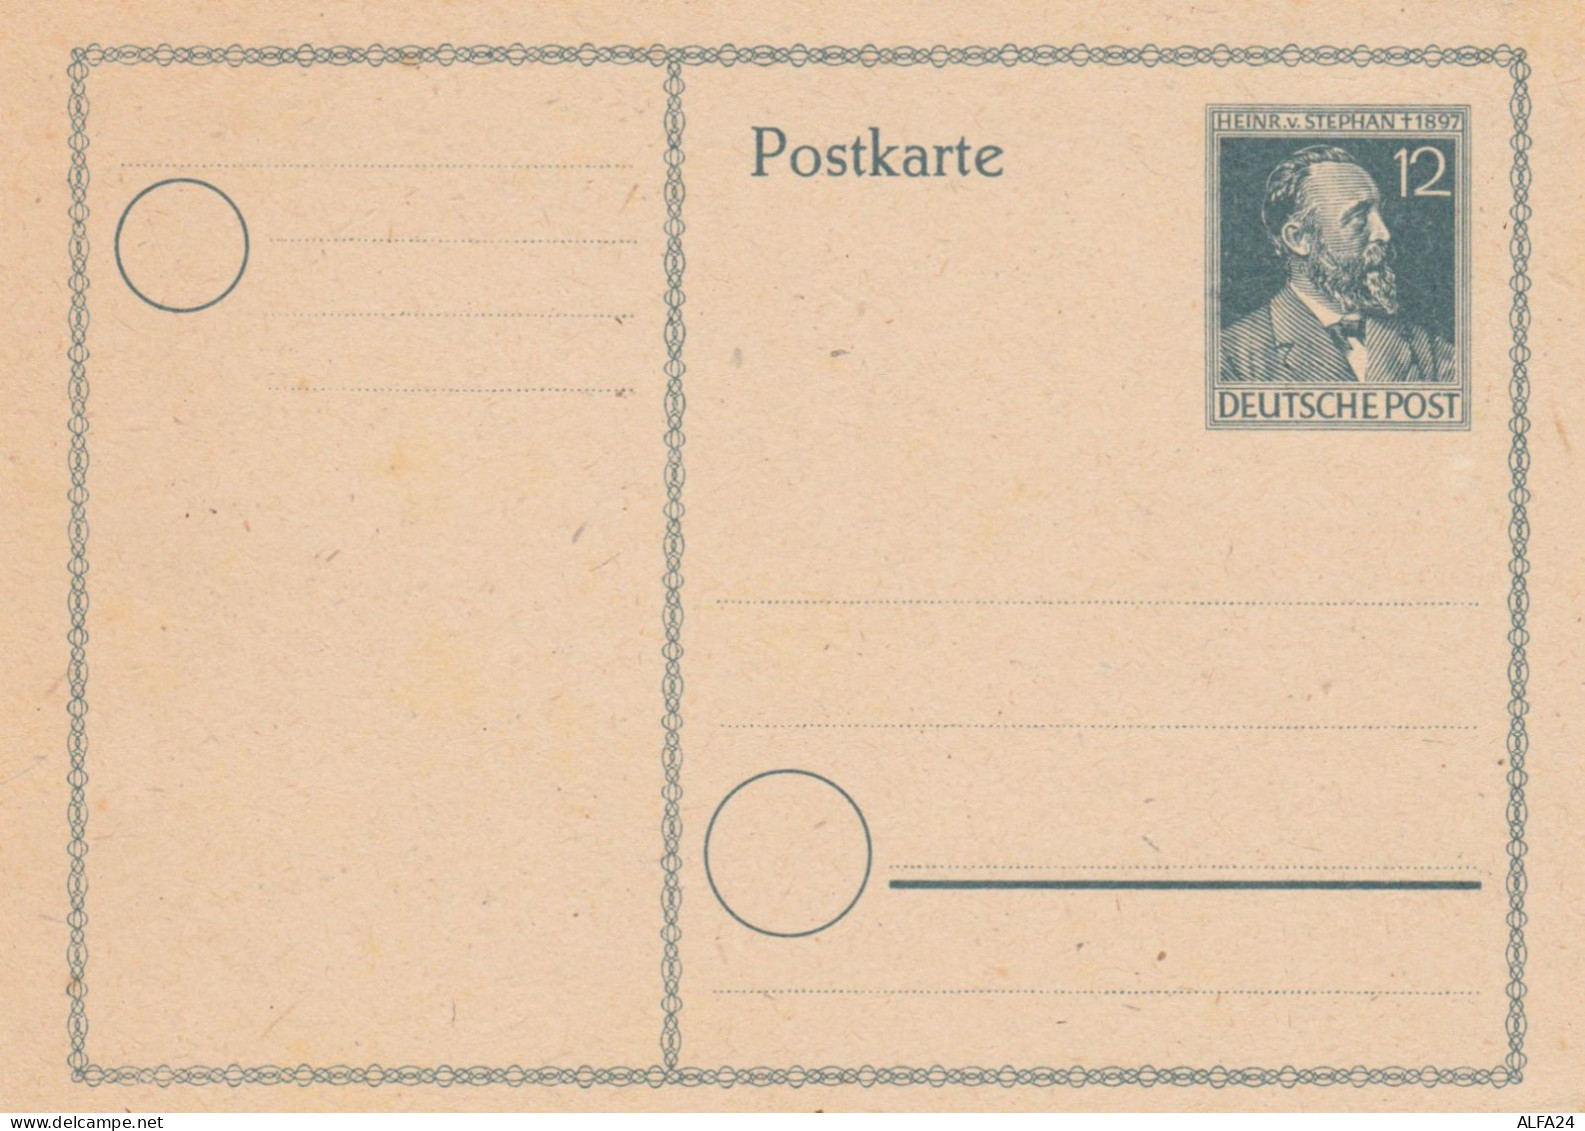 INTERO POSTALE 1948 HEINR STEPHAN NUOVO 12 PF GERMANIA (KP588 - Cartoline - Nuovi